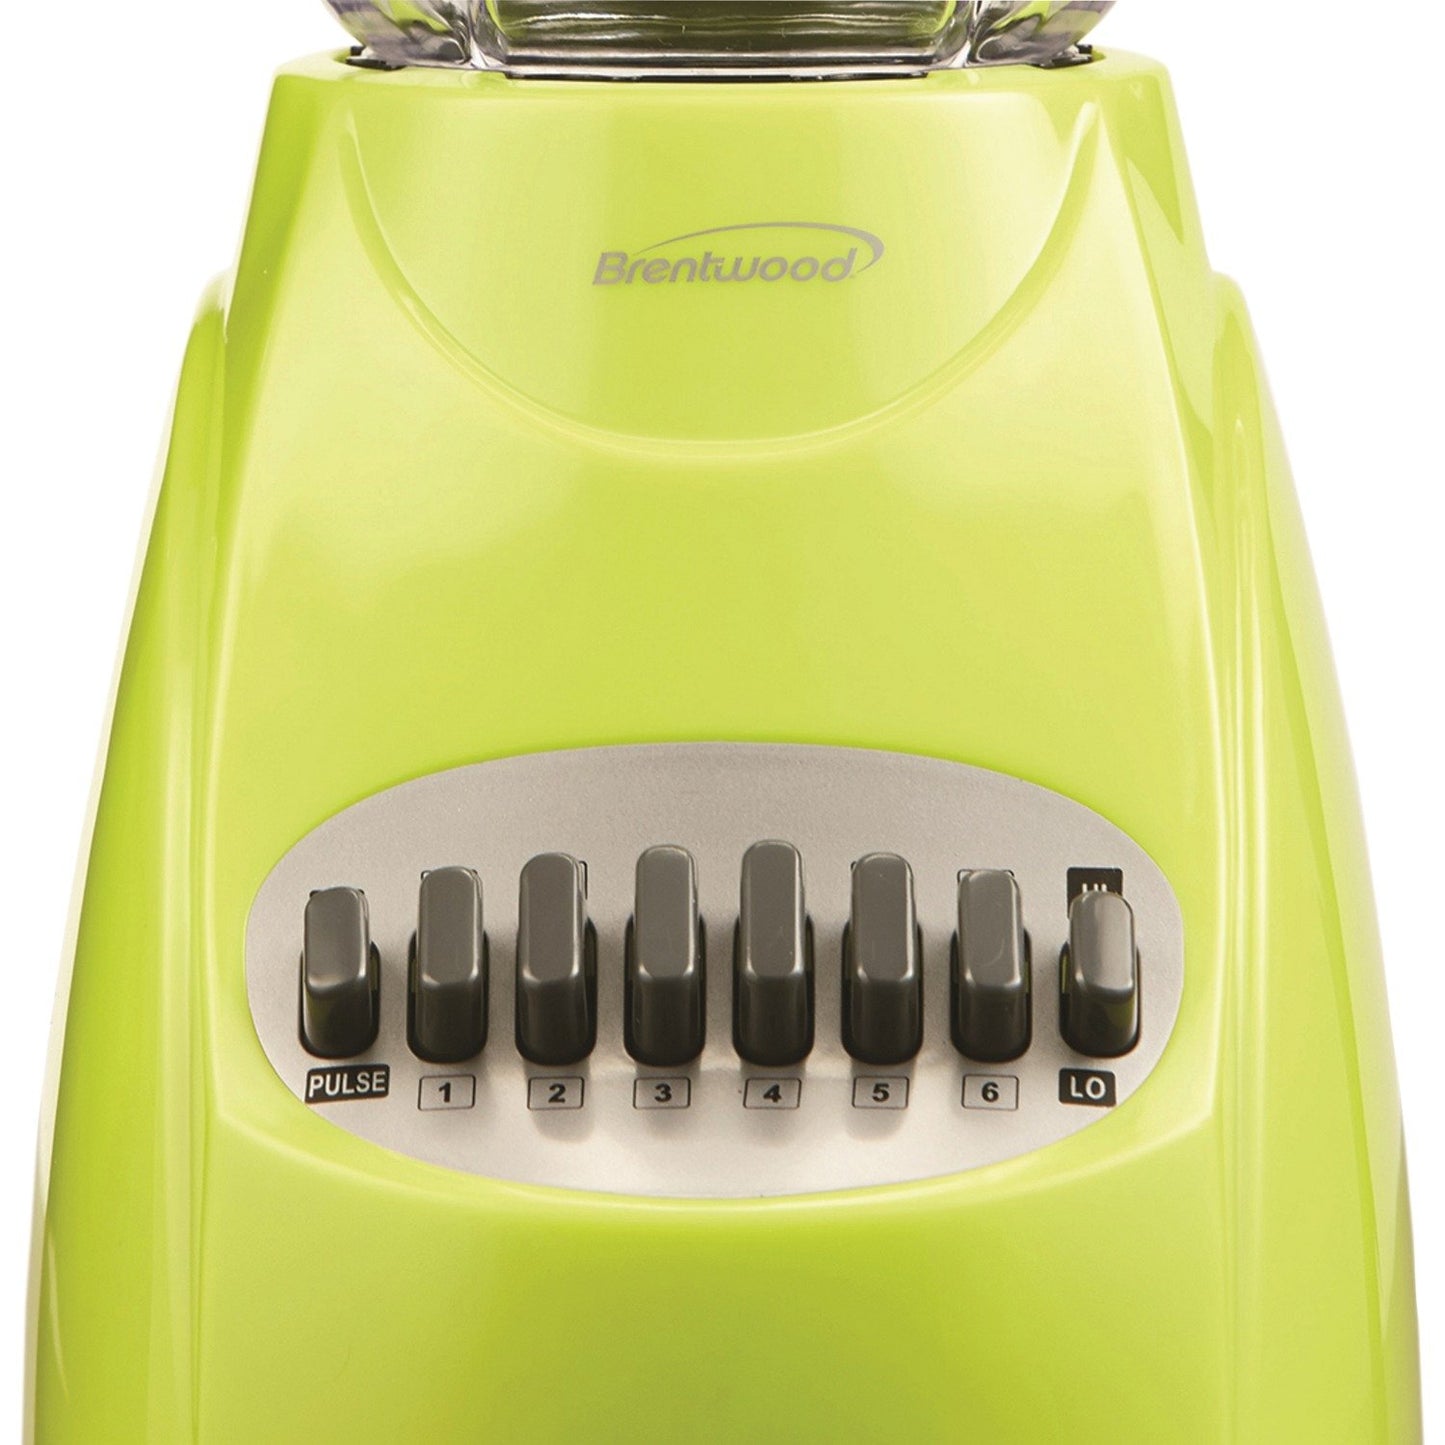 Brentwood Appl. JB-220G 50oz 12-Speed + Pulse Electric Blender (Lime Green)